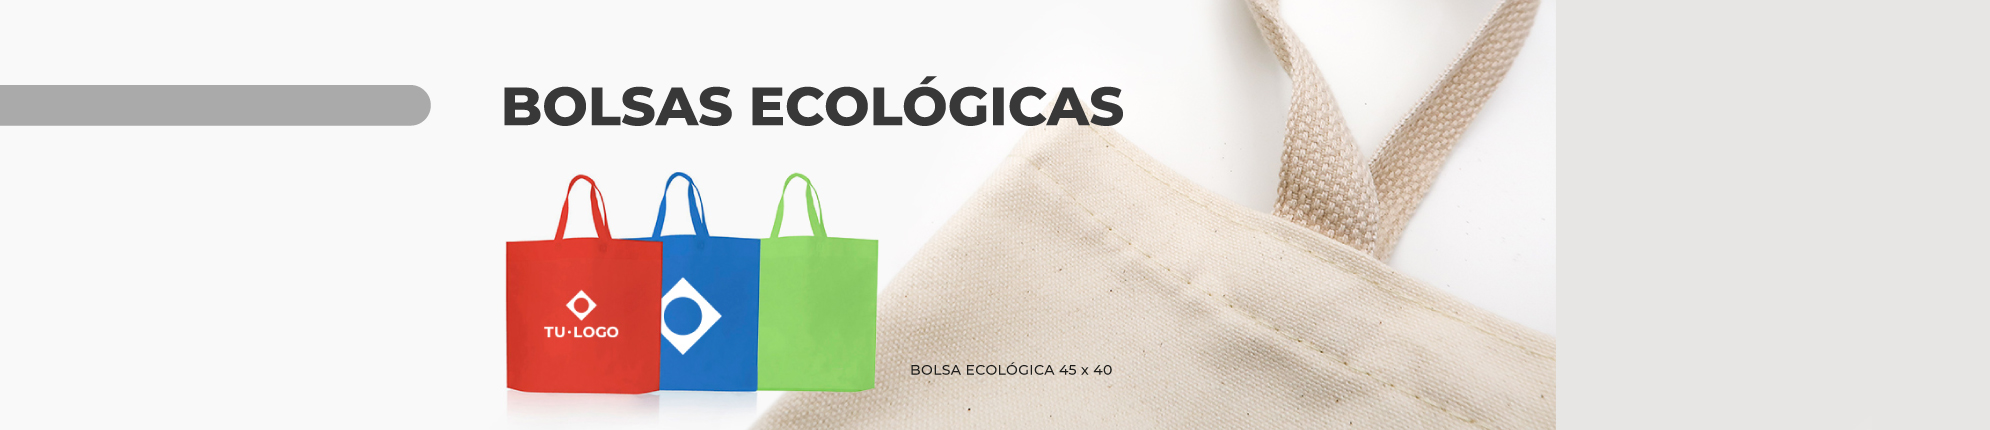 banner-bolsas-eco-full